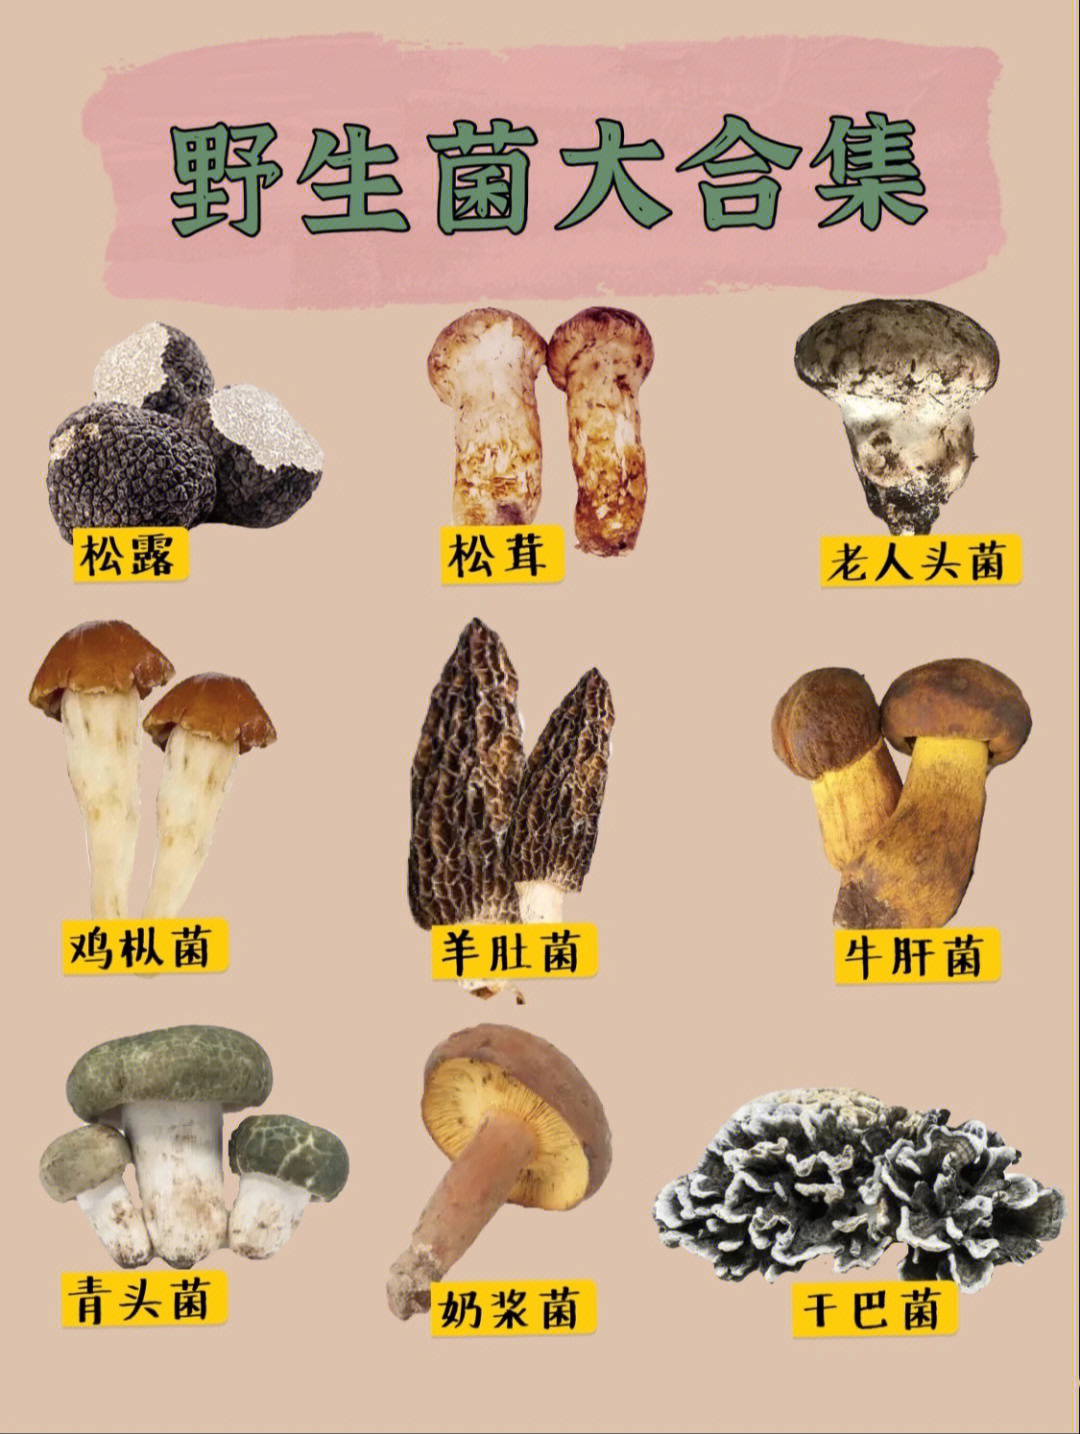 78云南最最好吃的野生菌大合集!